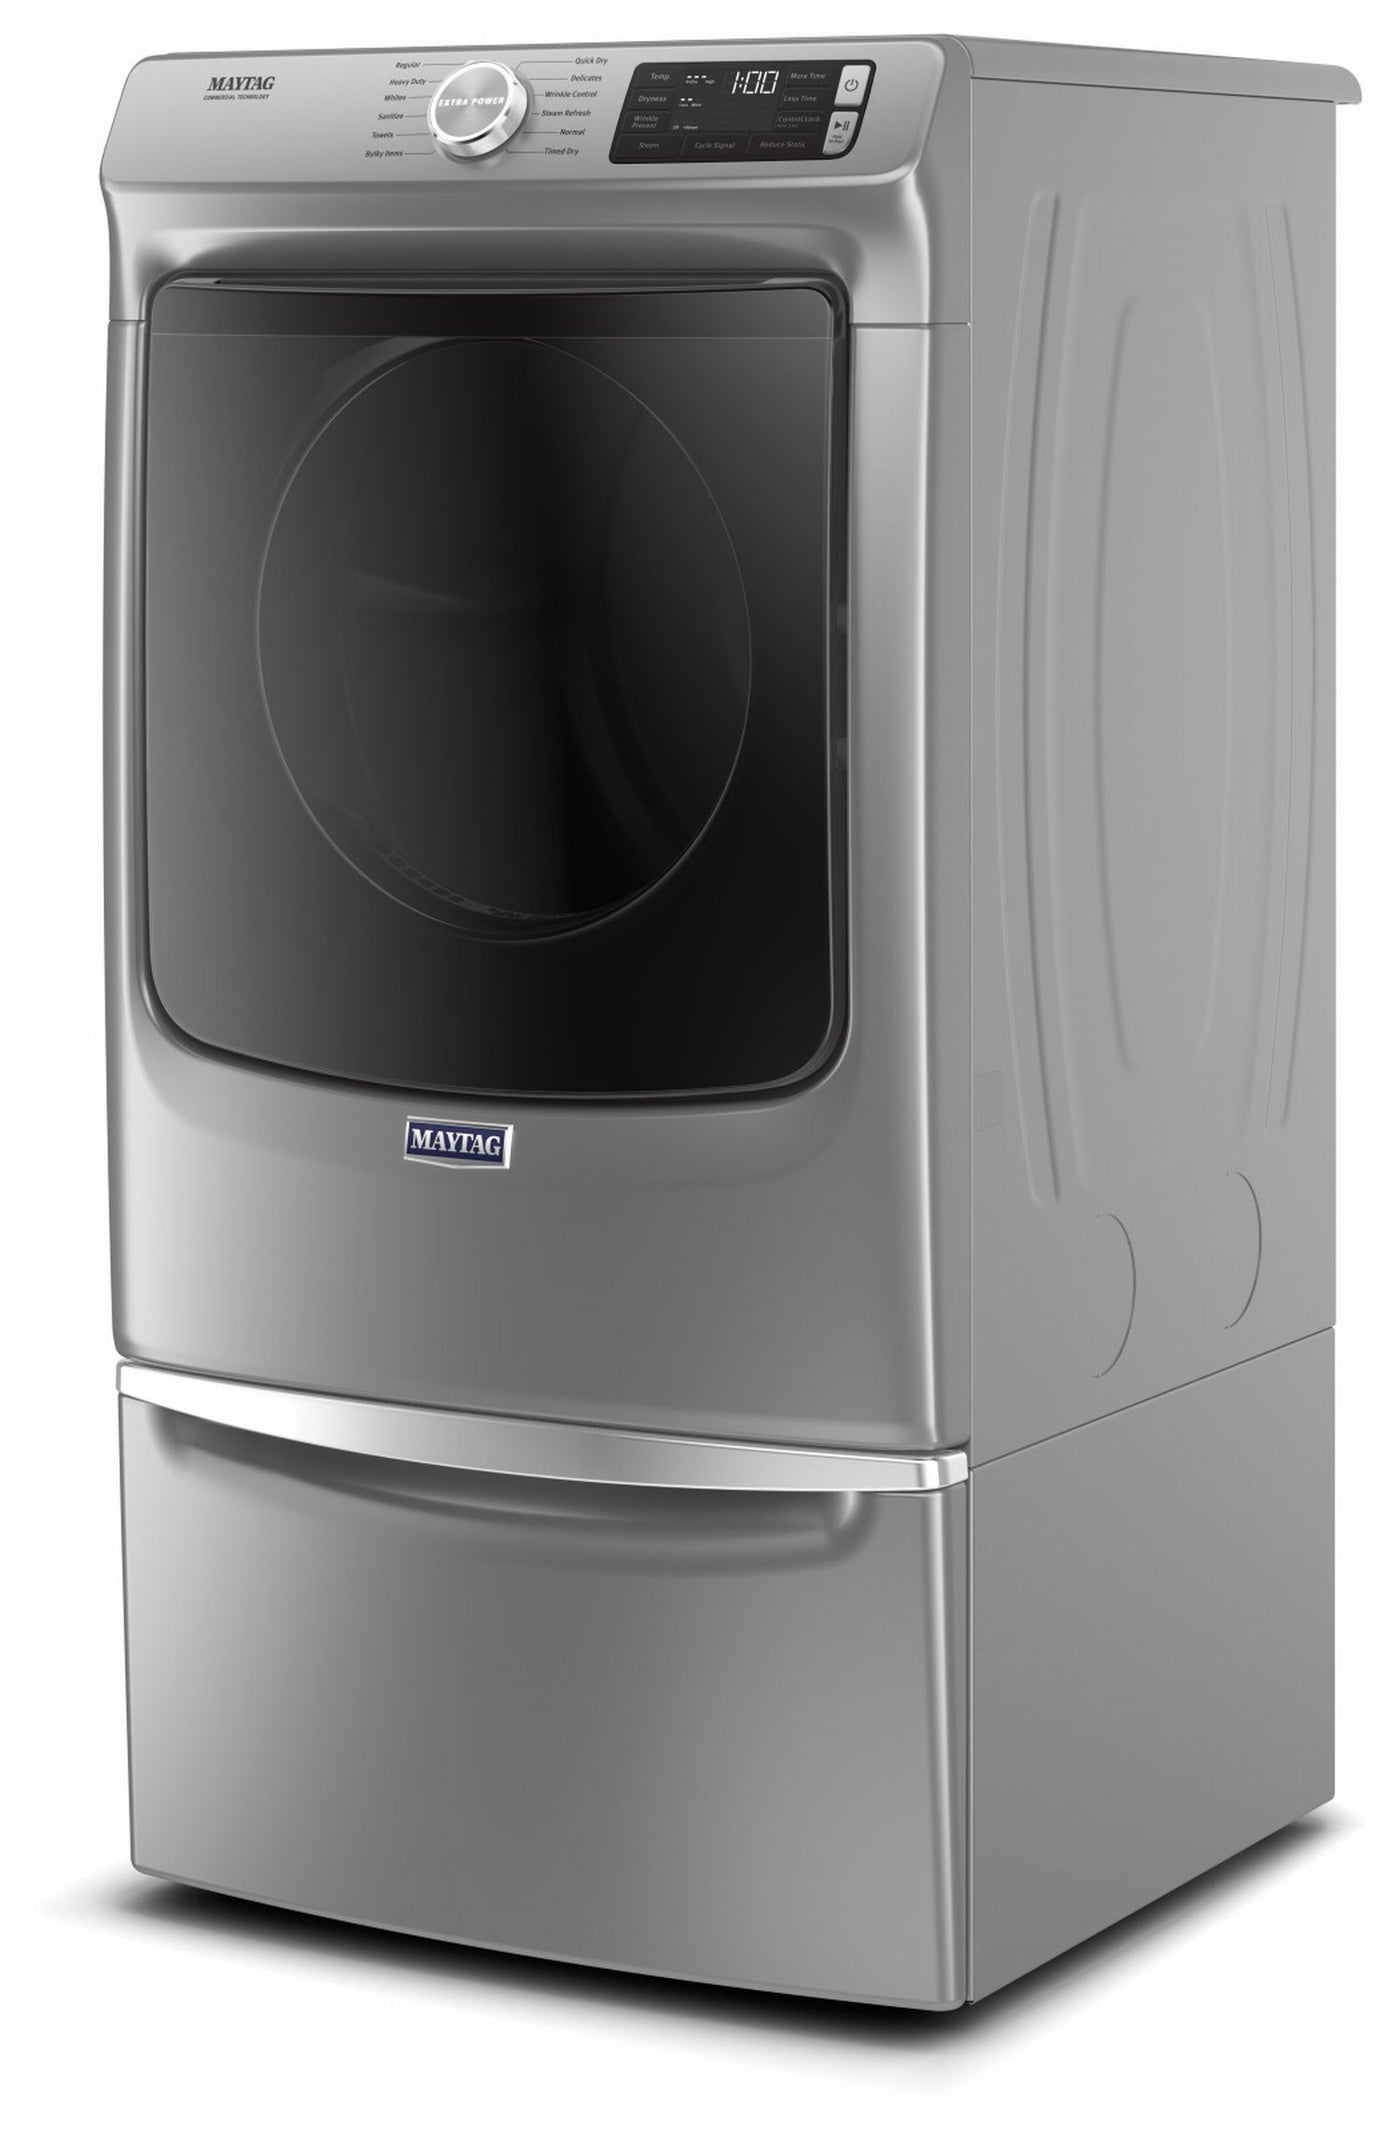 Maytag Metallic Slate Gas Dryer (7.3 Cu. Ft.) - MGD6630HC